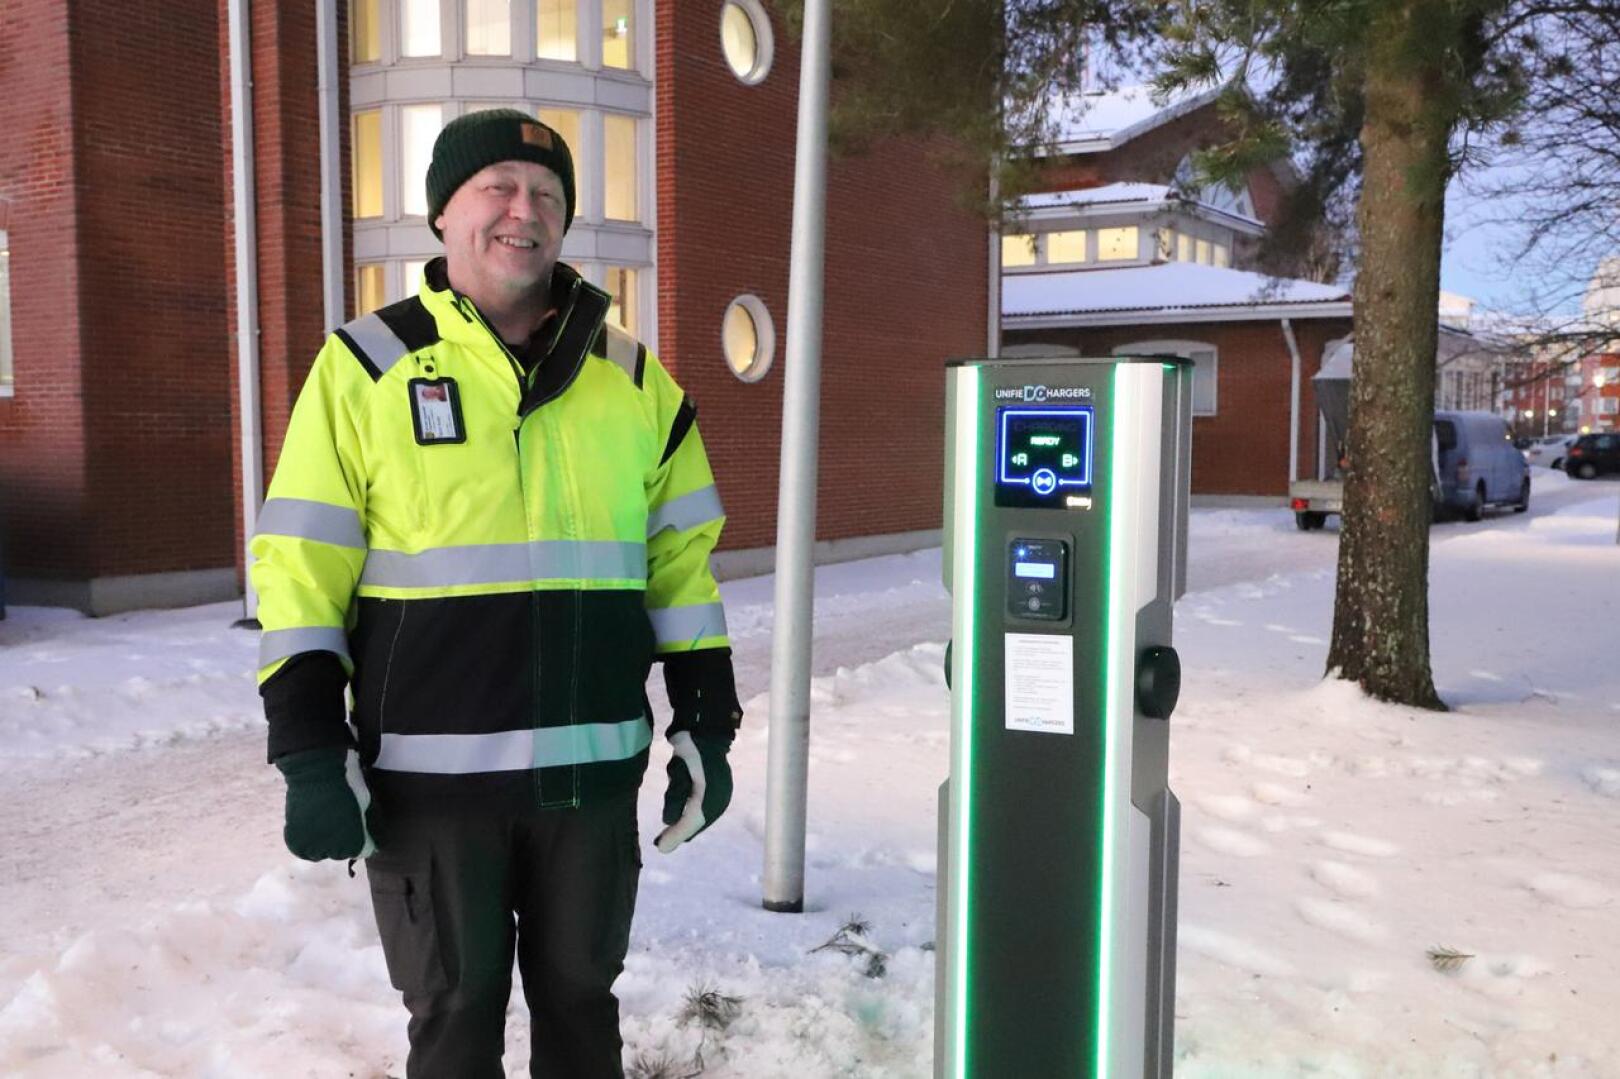 Nivalan kaupungin kiinteistöpäällikkö Tauno Korpi sanoo, että sähköautojen latauspisteiden rakentaminen on osa kaupungin palvelujen kehittämistä.